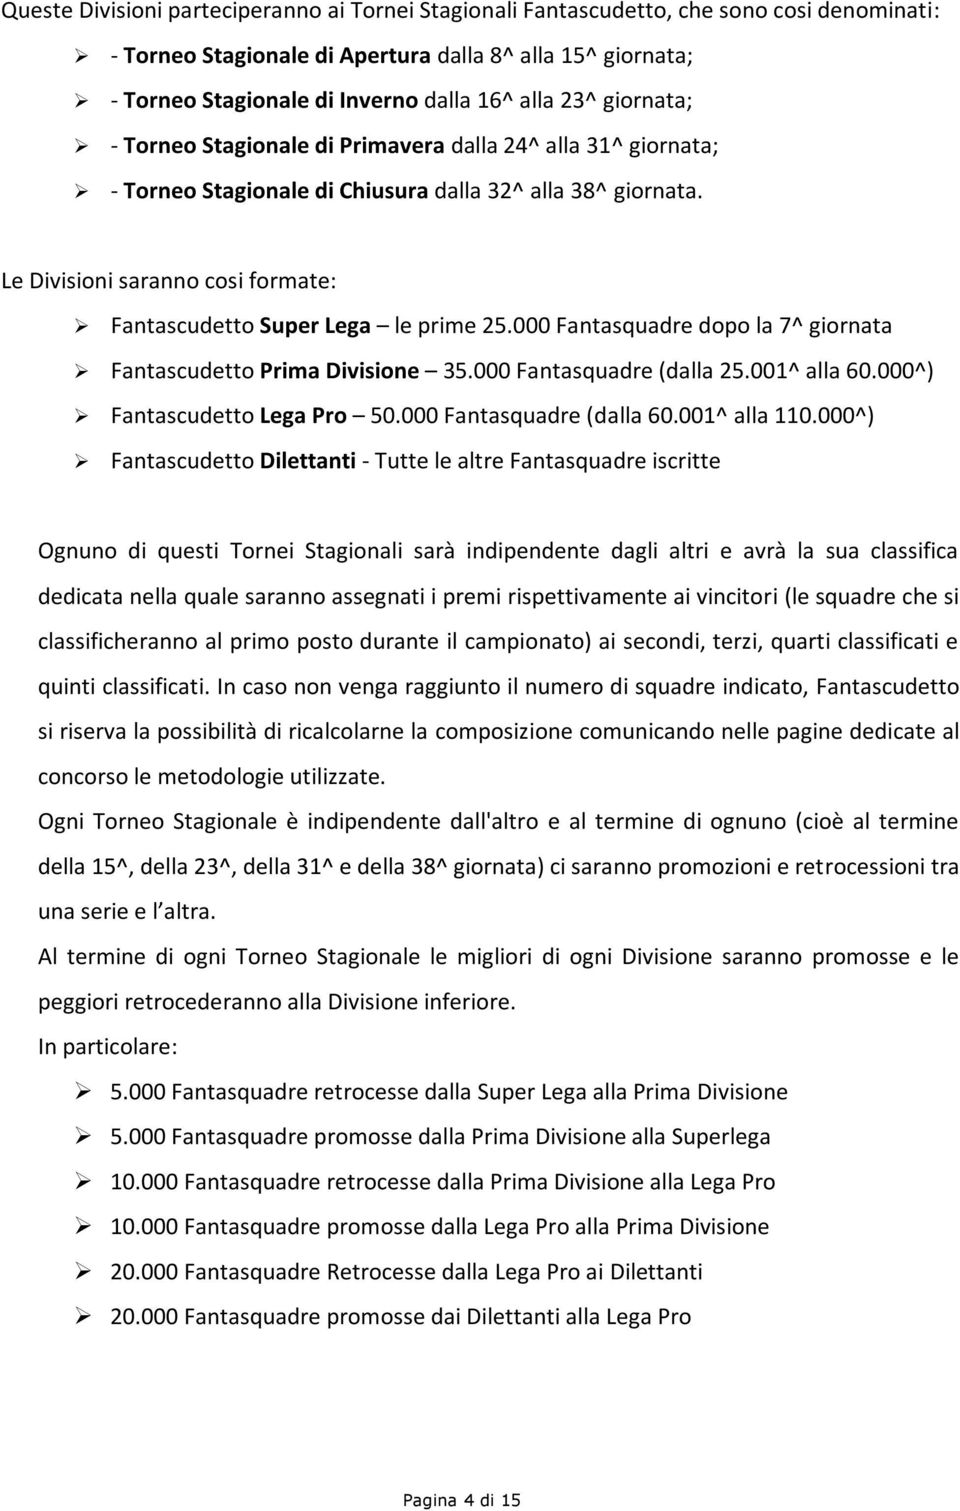 Le Divisioni saranno cosi formate: Fantascudetto Super Lega le prime 25.000 Fantasquadre dopo la 7^ giornata Fantascudetto Prima Divisione 35.000 Fantasquadre (dalla 25.001^ alla 60.